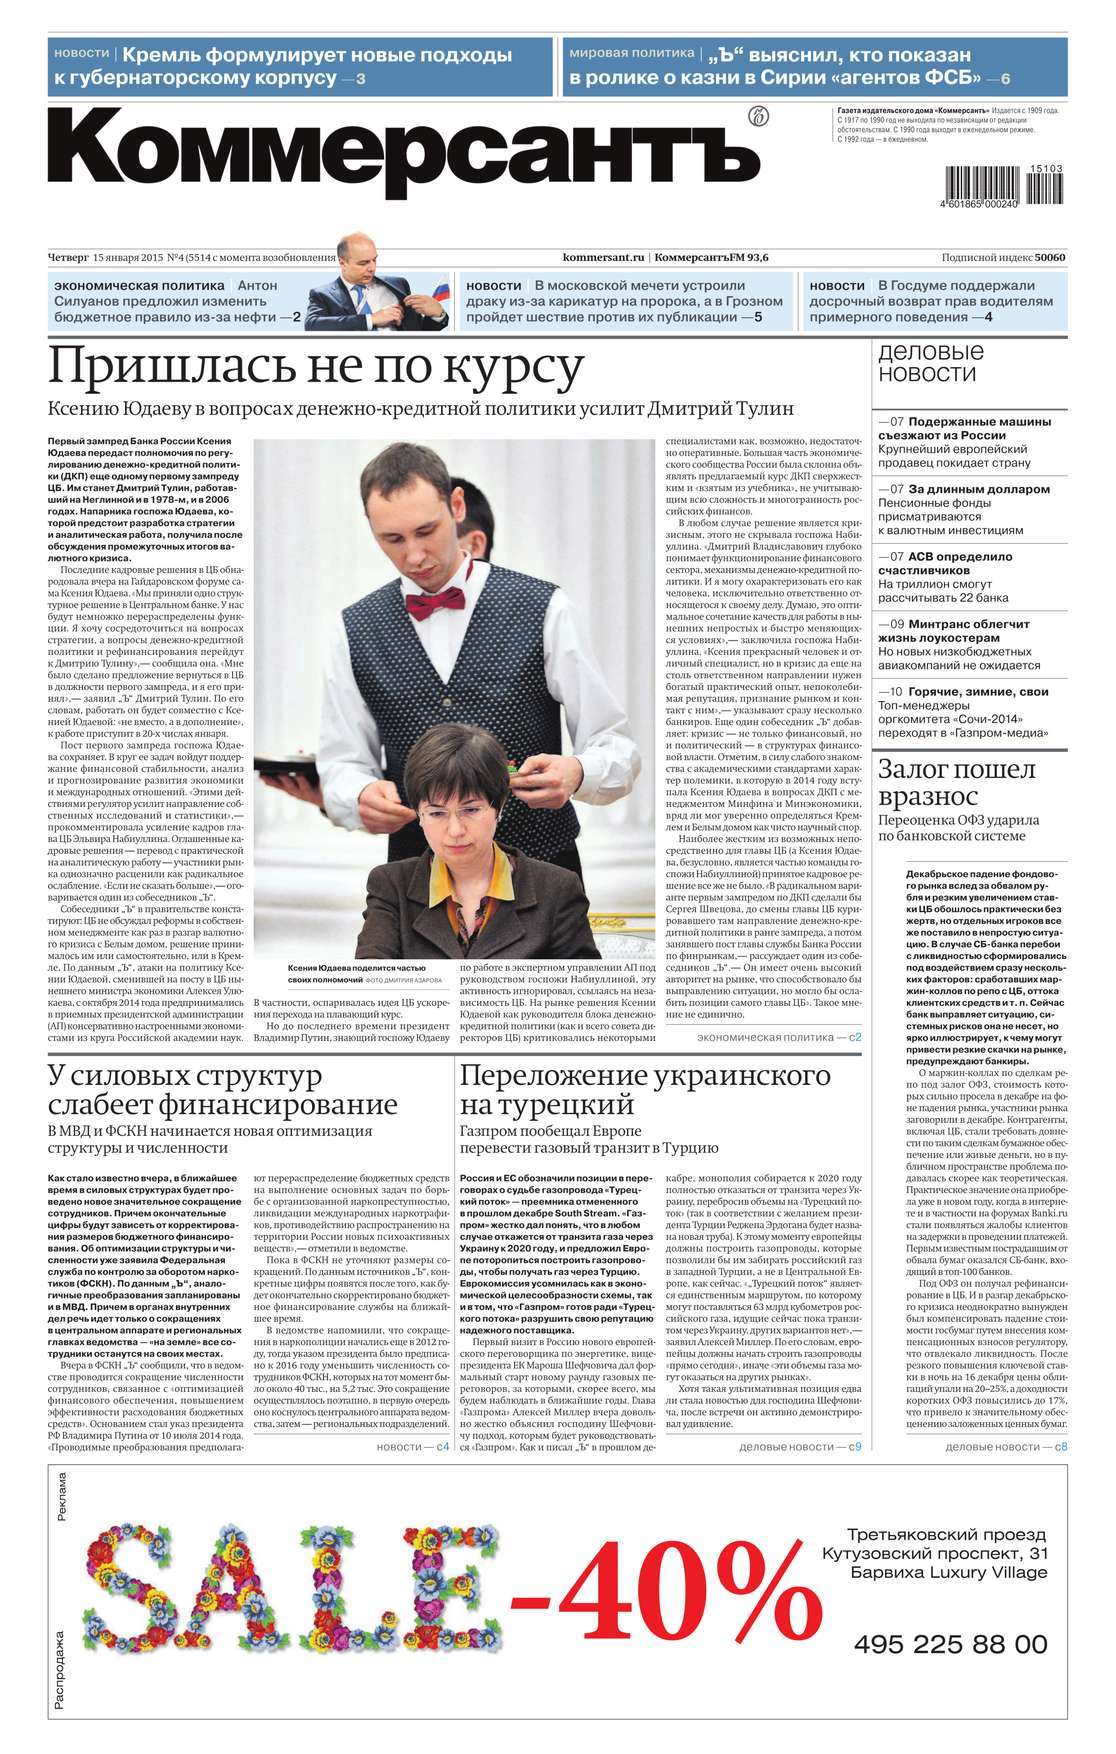 Редакция газеты КоммерсантЪ — КоммерсантЪ 04-2015